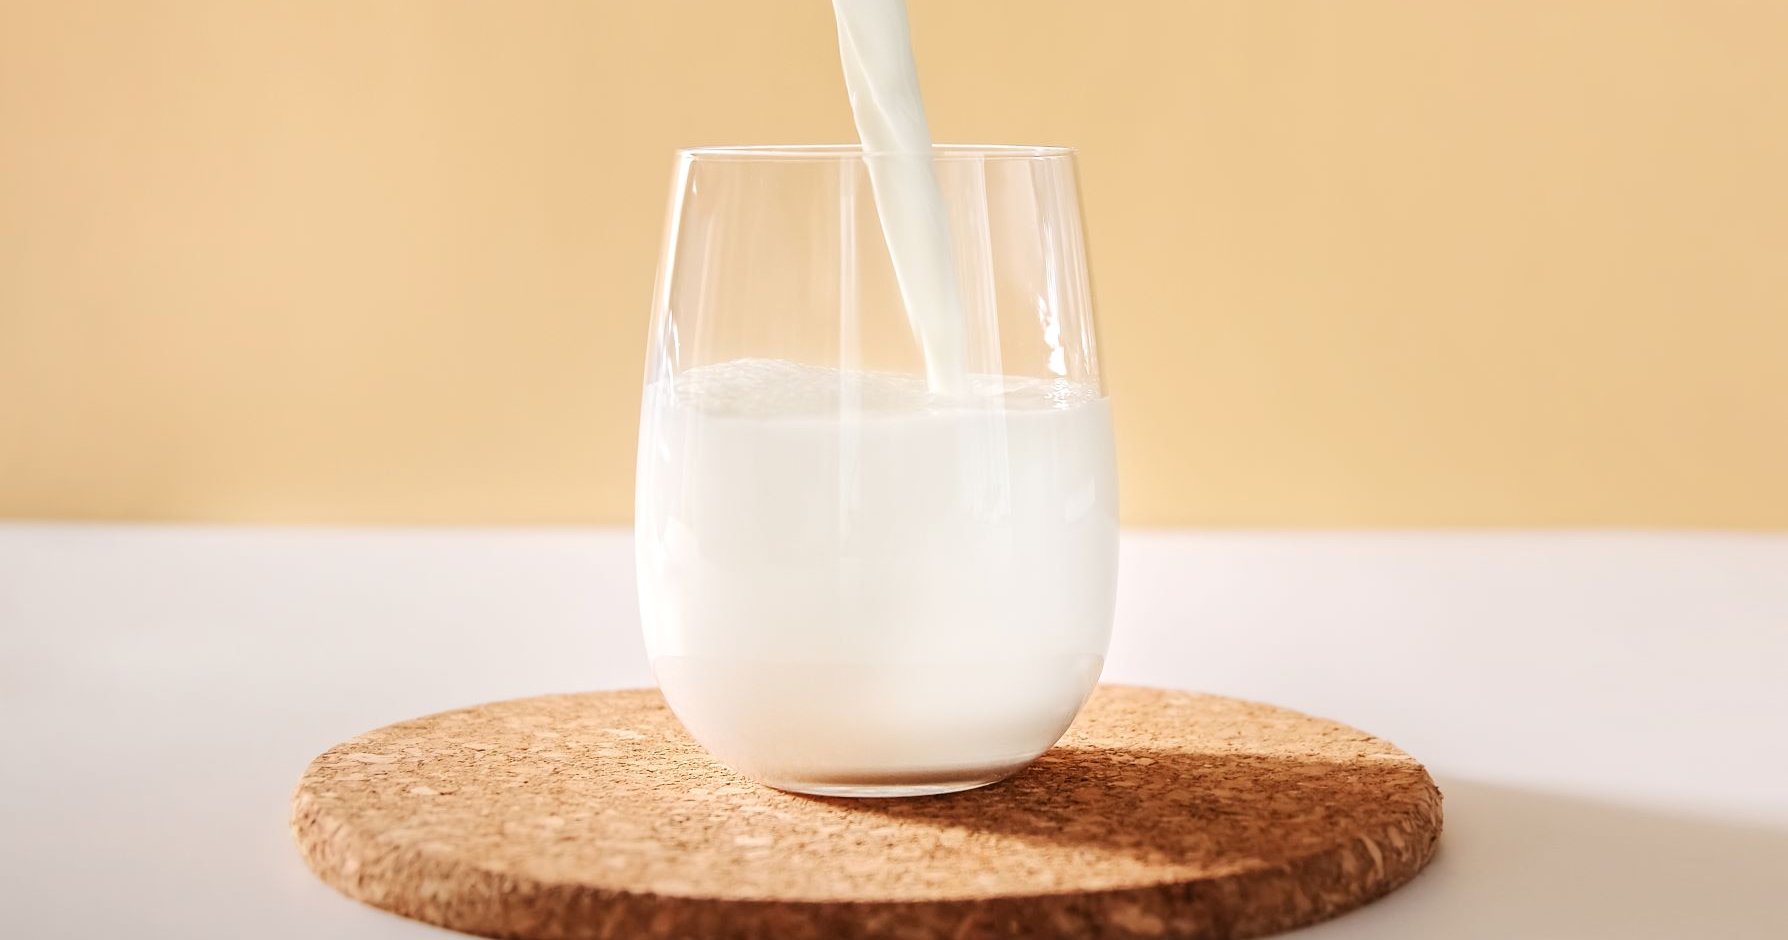 Mejor leche entera que desnatada? Un estudio dice que sí 